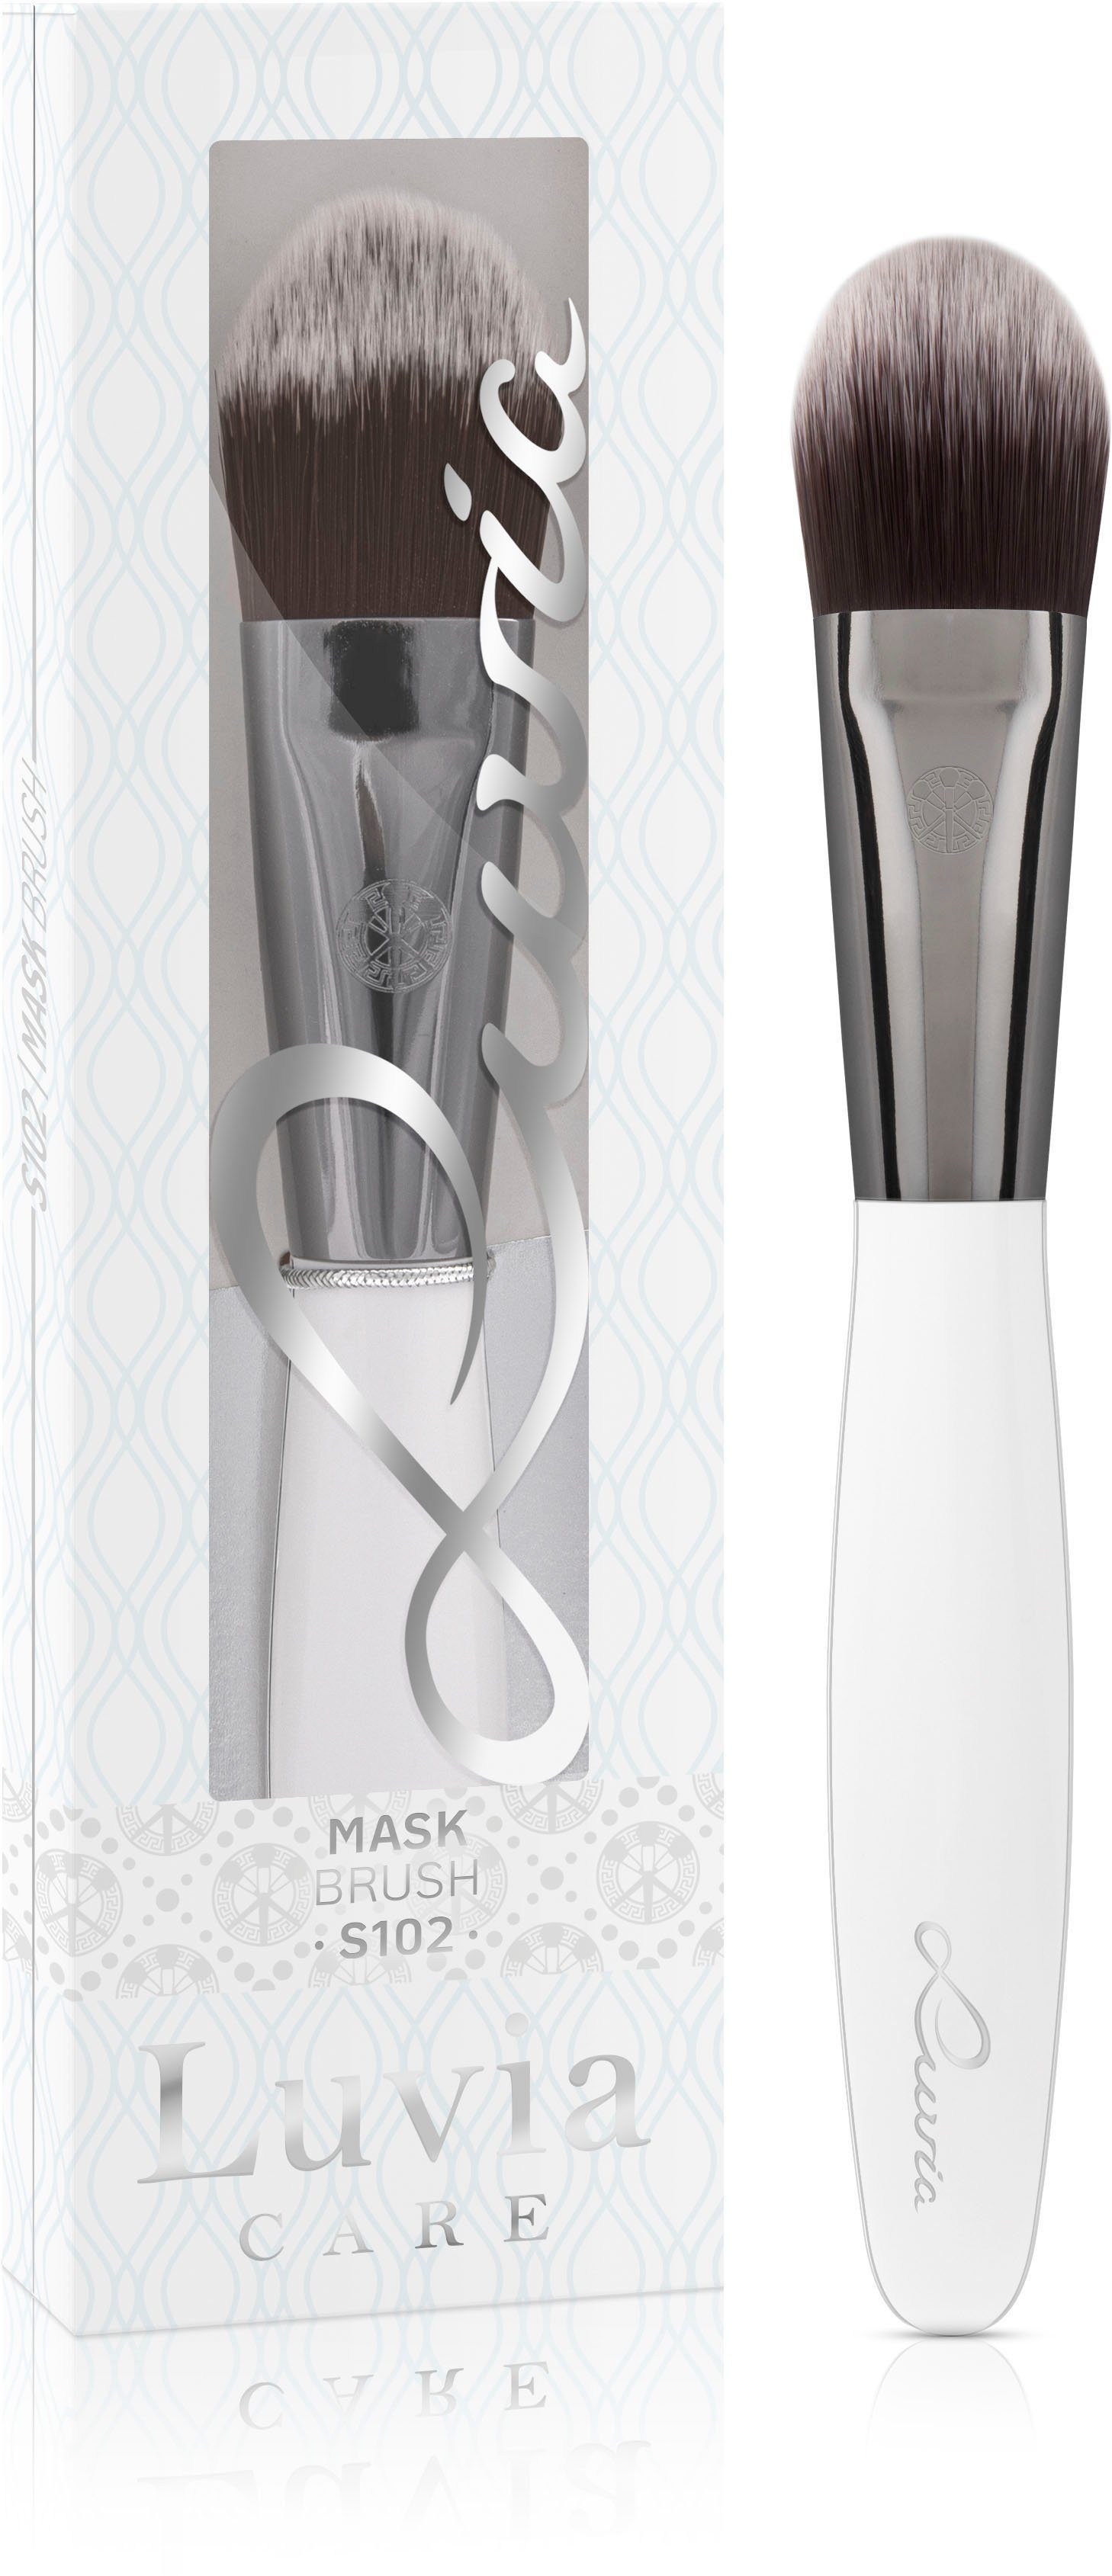 Mask Maskenpinsel Brush Luvia Cosmetics